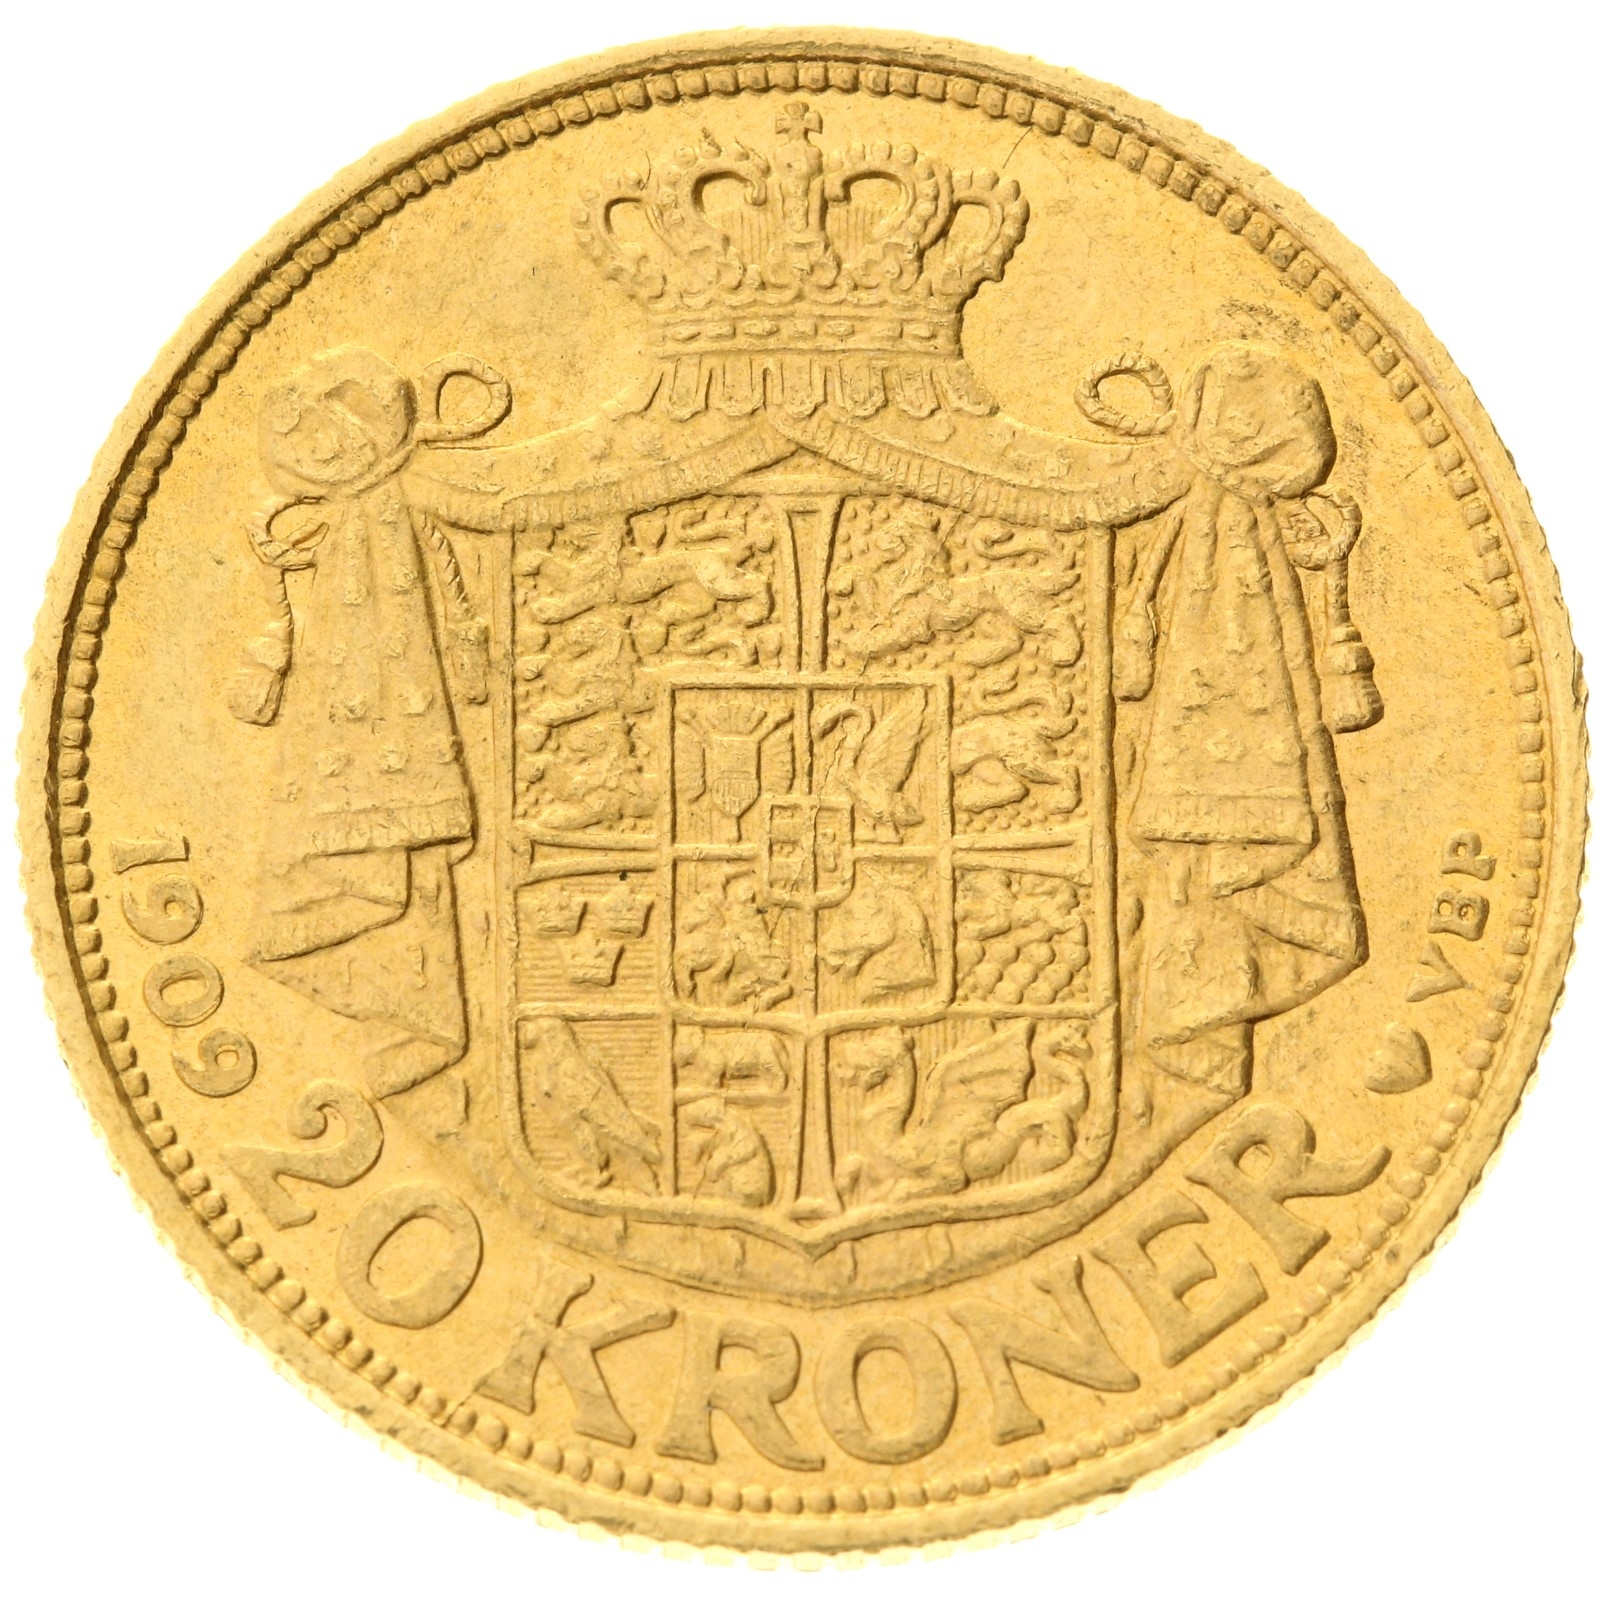 Denmark - 20 kroner - 1909 - Frederik VIII 